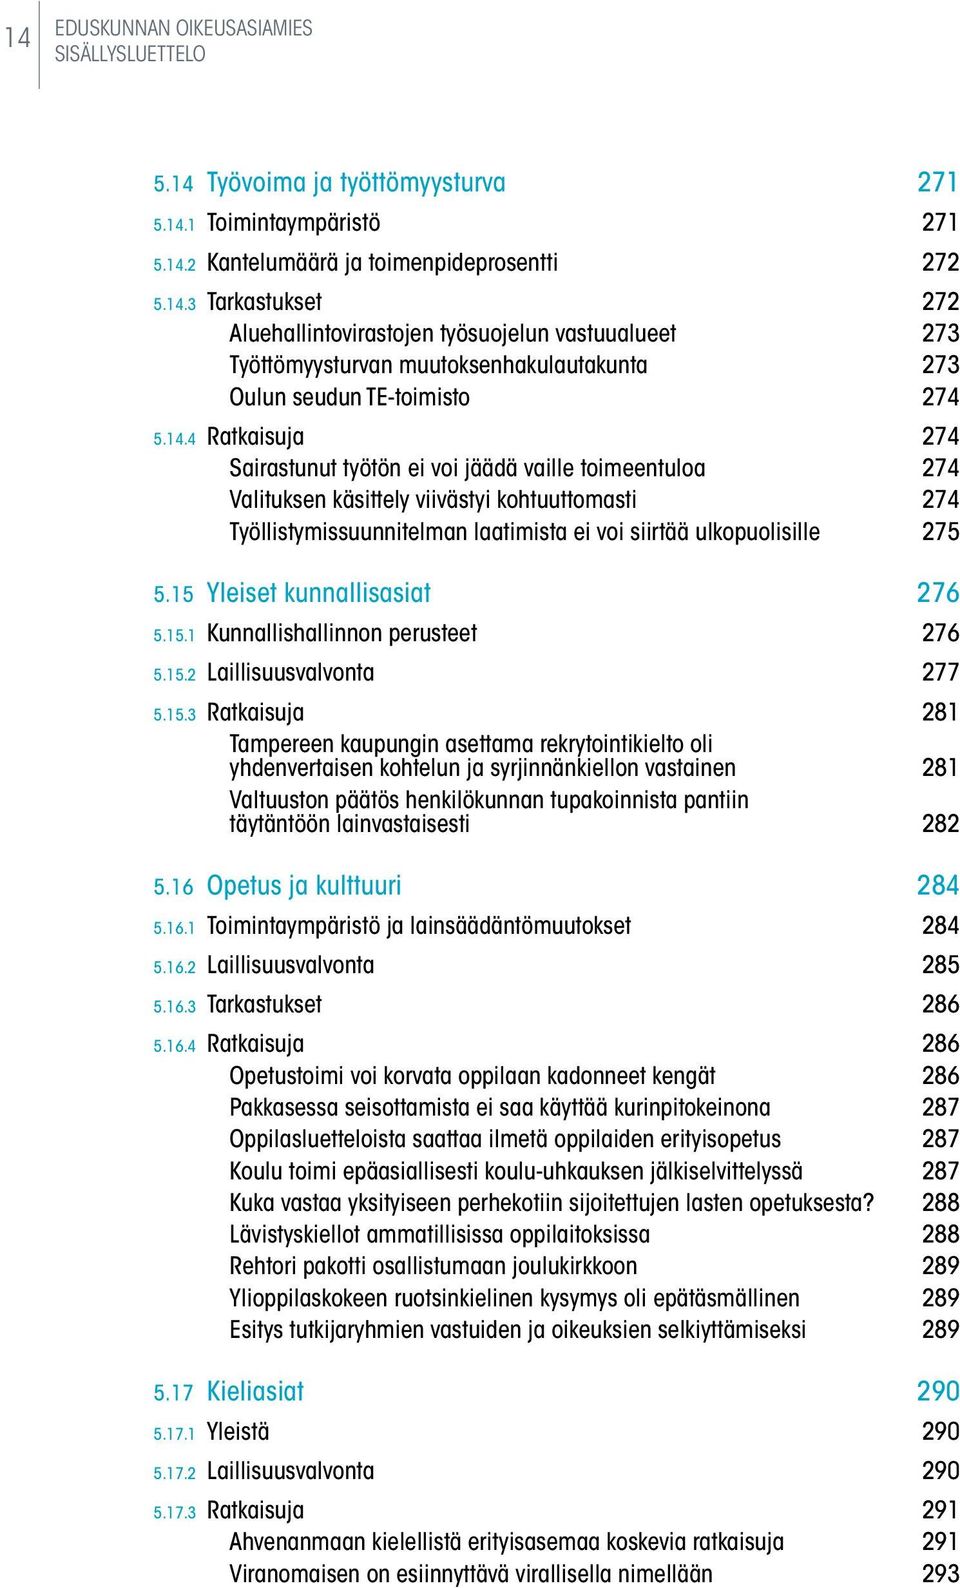 15 Yleiset kunnallisasiat 276 5.15.1 Kunnallishallinnon perusteet 276 5.15.2 Laillisuusvalvonta 277 5.15.3 Ratkaisuja 281 Tampereen kaupungin asettama rekrytointikielto oli yhdenvertaisen kohtelun ja